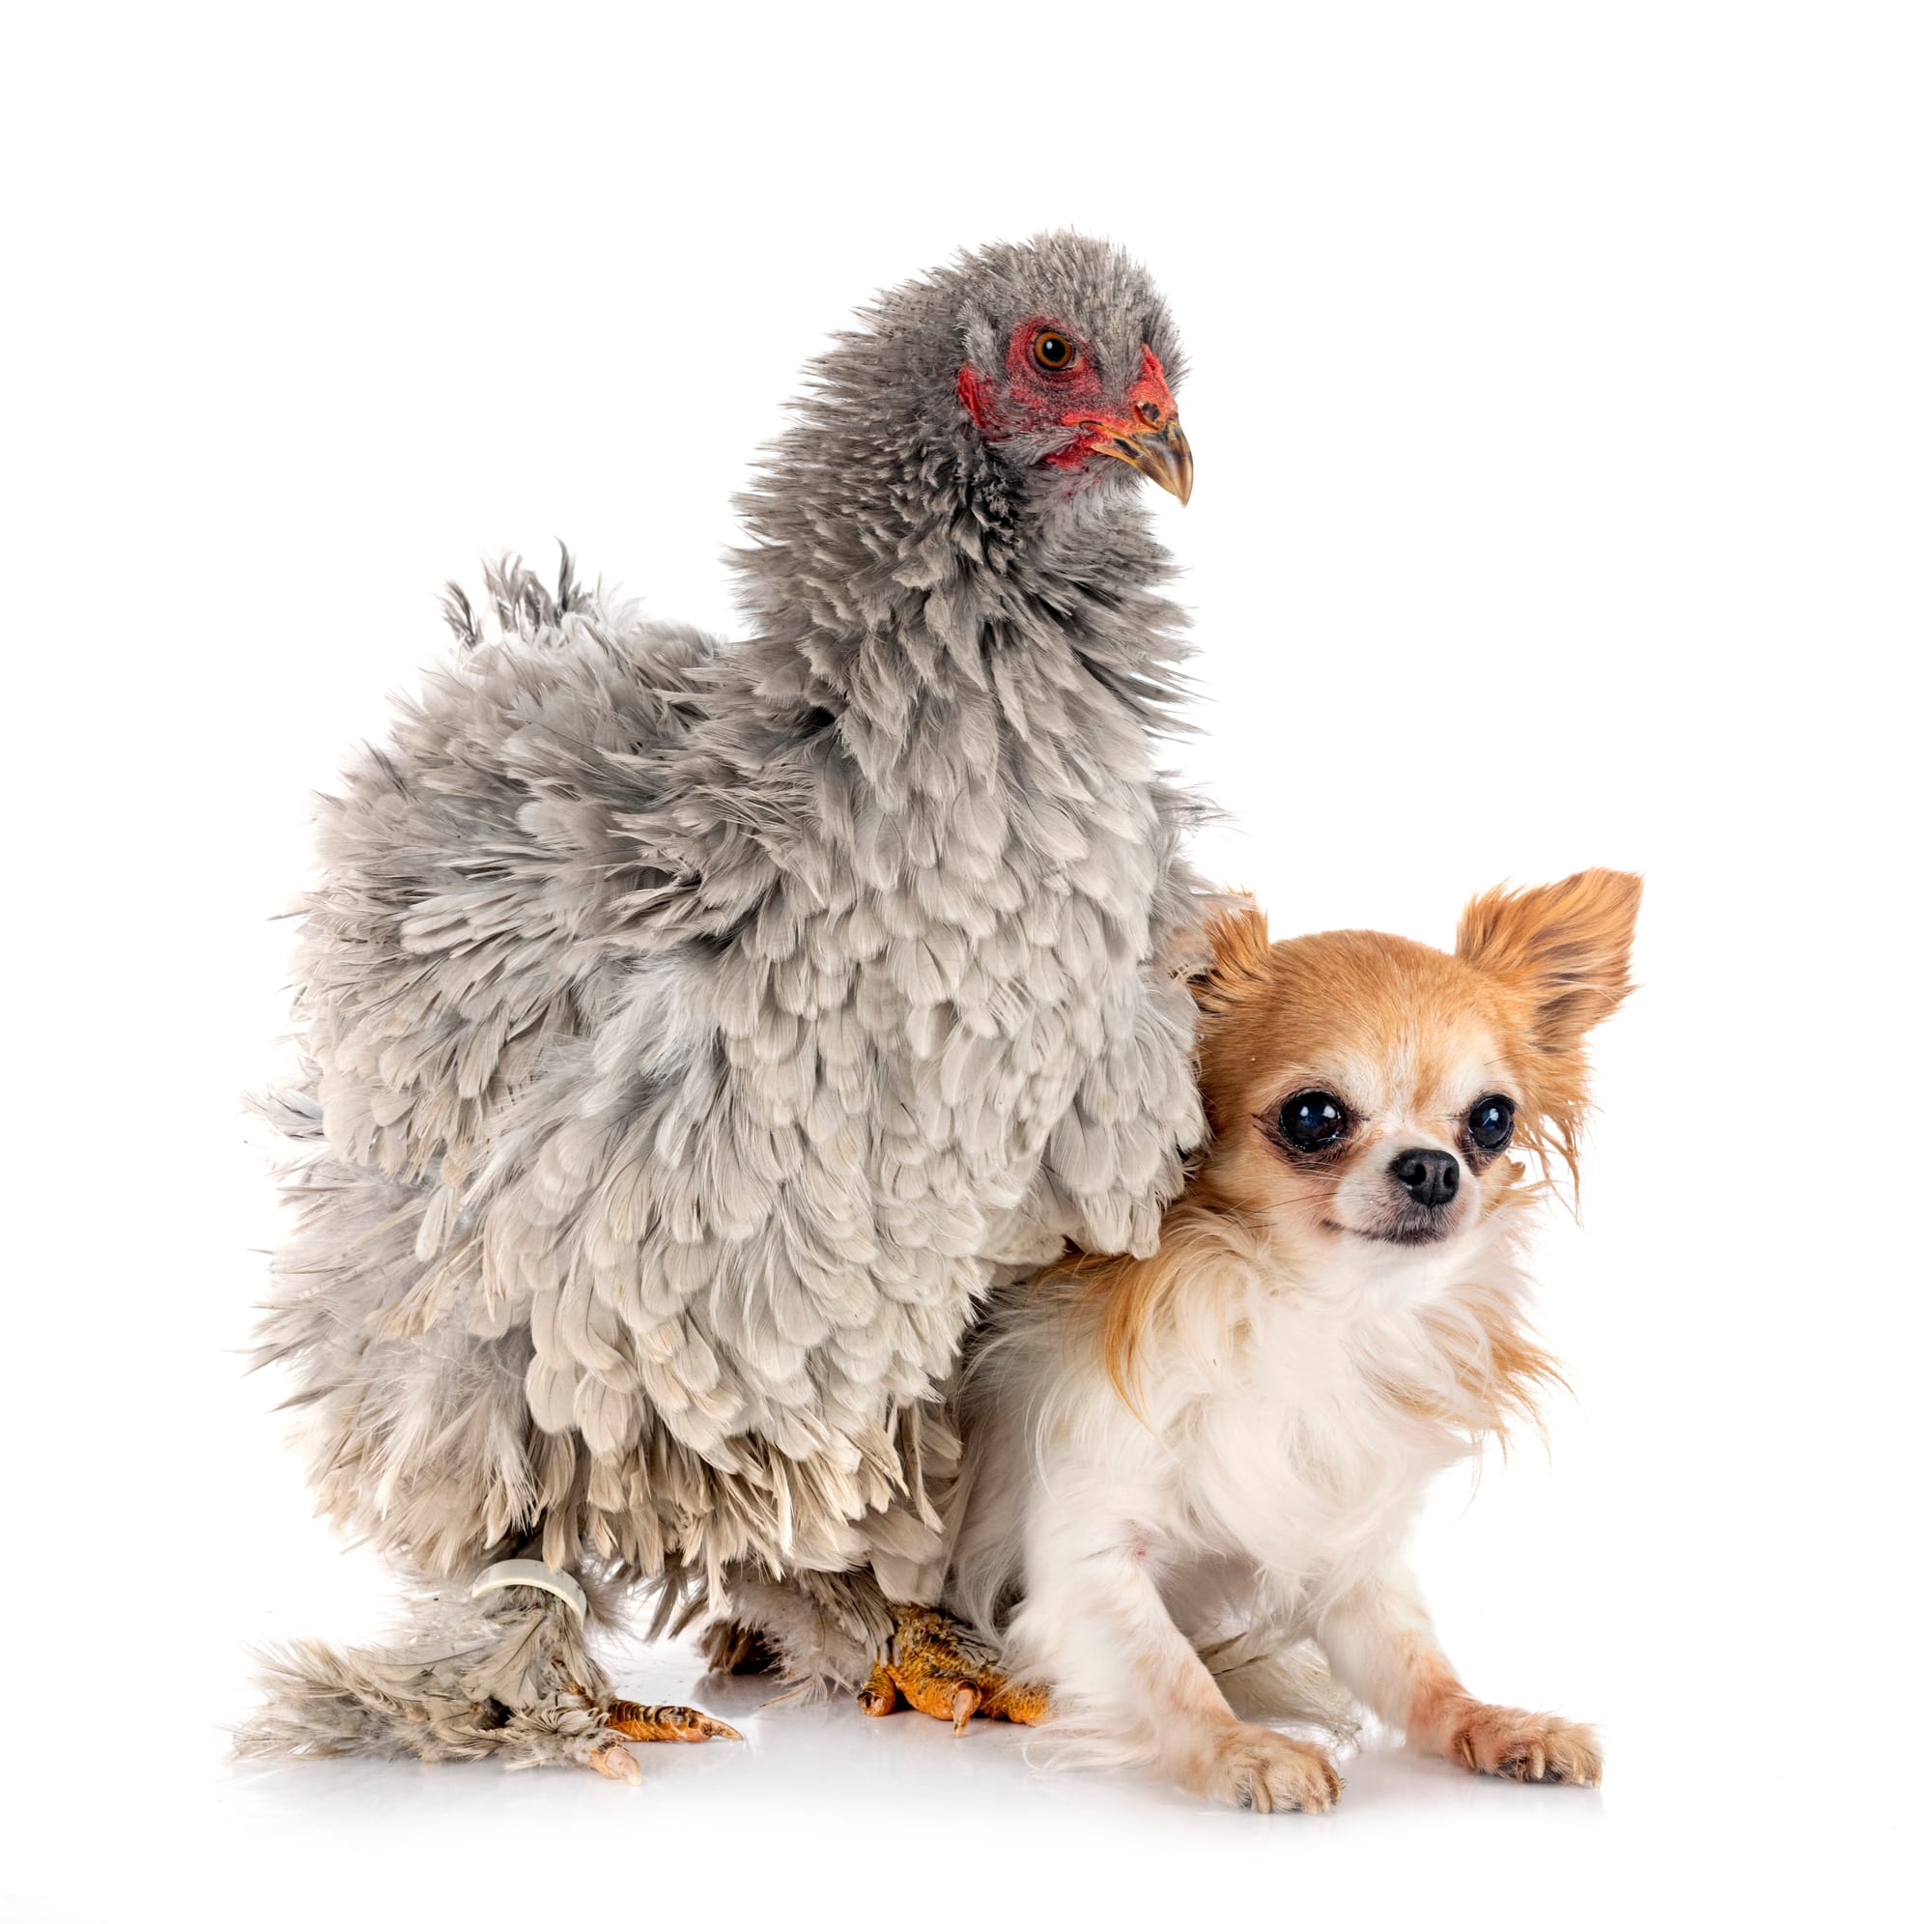 Dog Allergic to Chicken